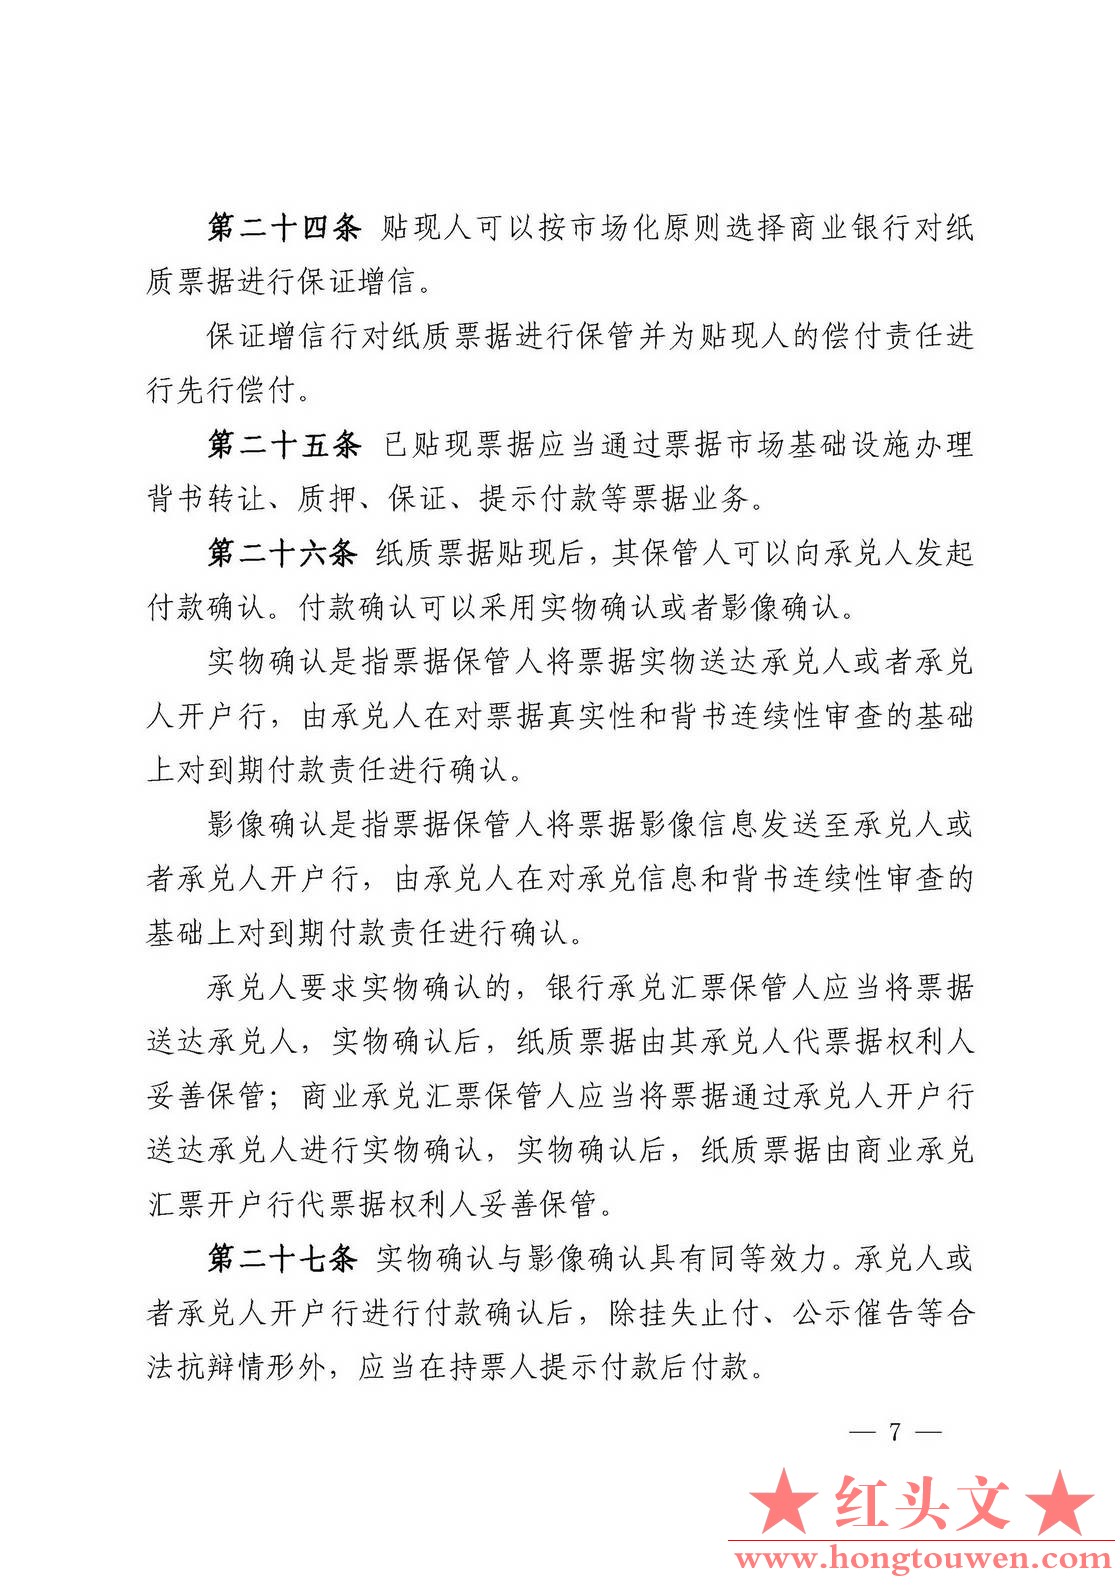 中国人民银行公告[2016]9号-票据交易管理办法_页面_07.jpg